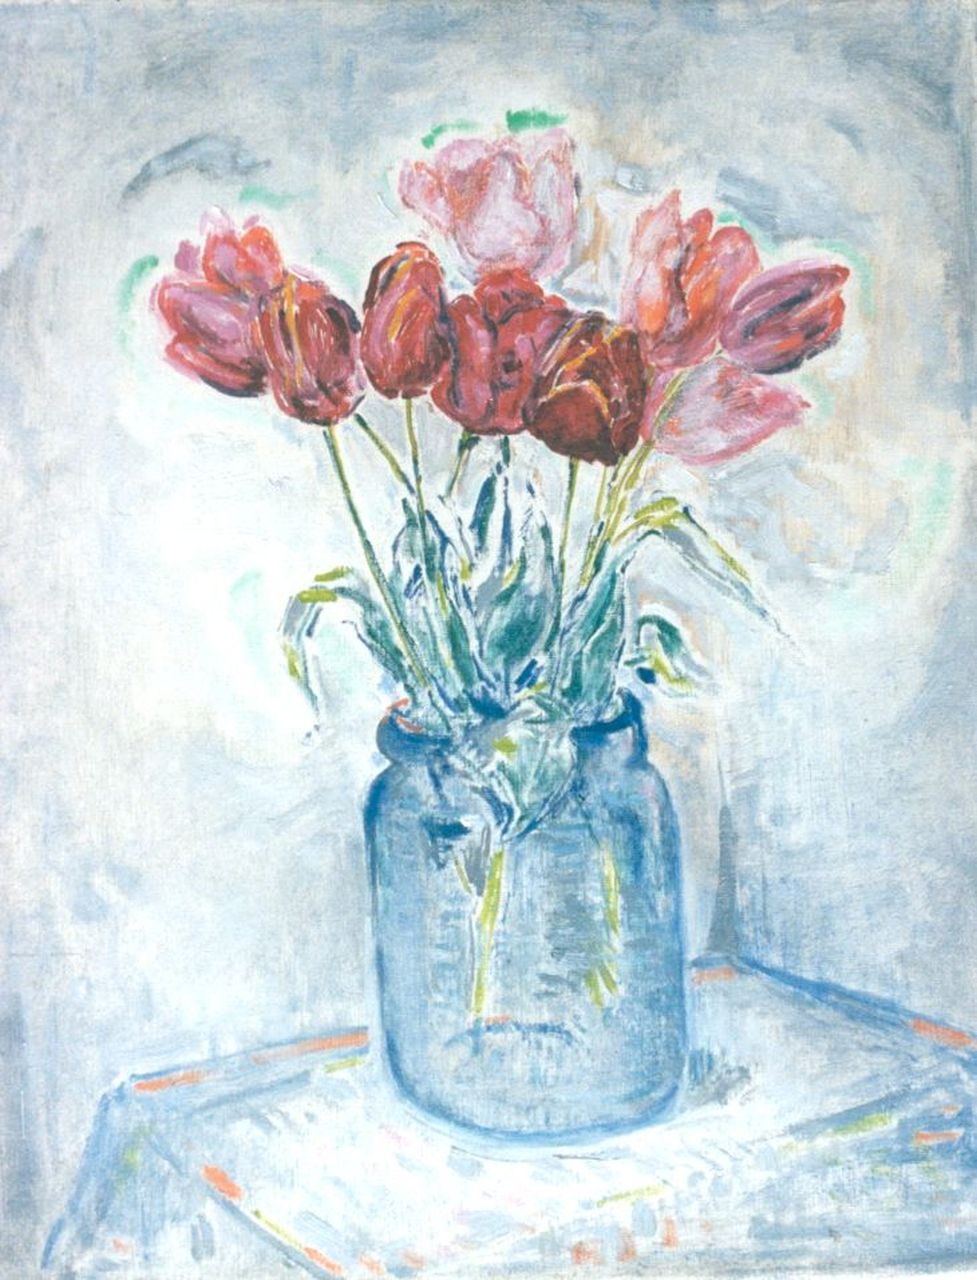 Rijn N.P.Q. van | Nicolaas Petrus Quirinus 'Nico' van Rijn, Tulips in a glass vase, Öl auf Leinwand 50,0 x 40,3 cm